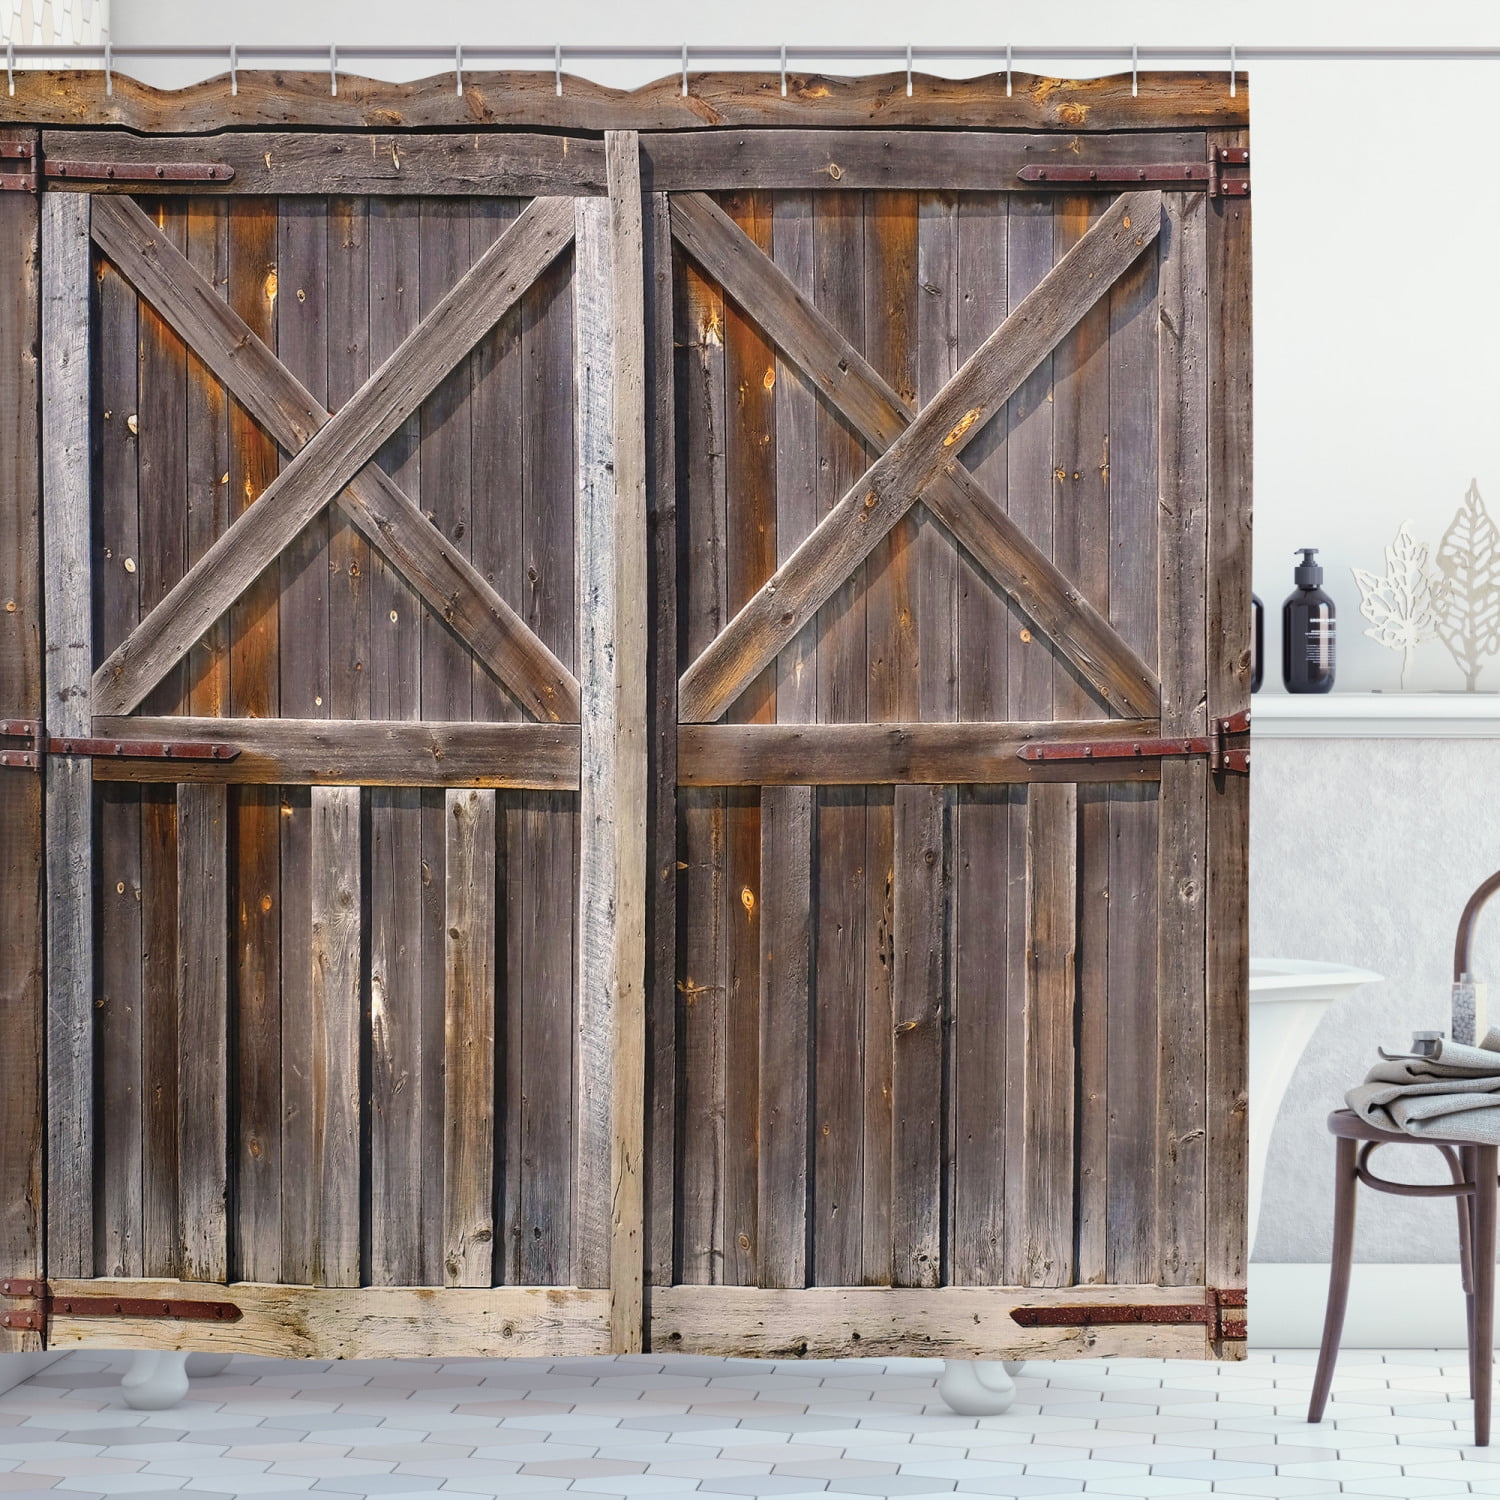 Hippie Old Wooden Barn Door Shower Curtain Art Rustic Waterproof Set Home Decor 